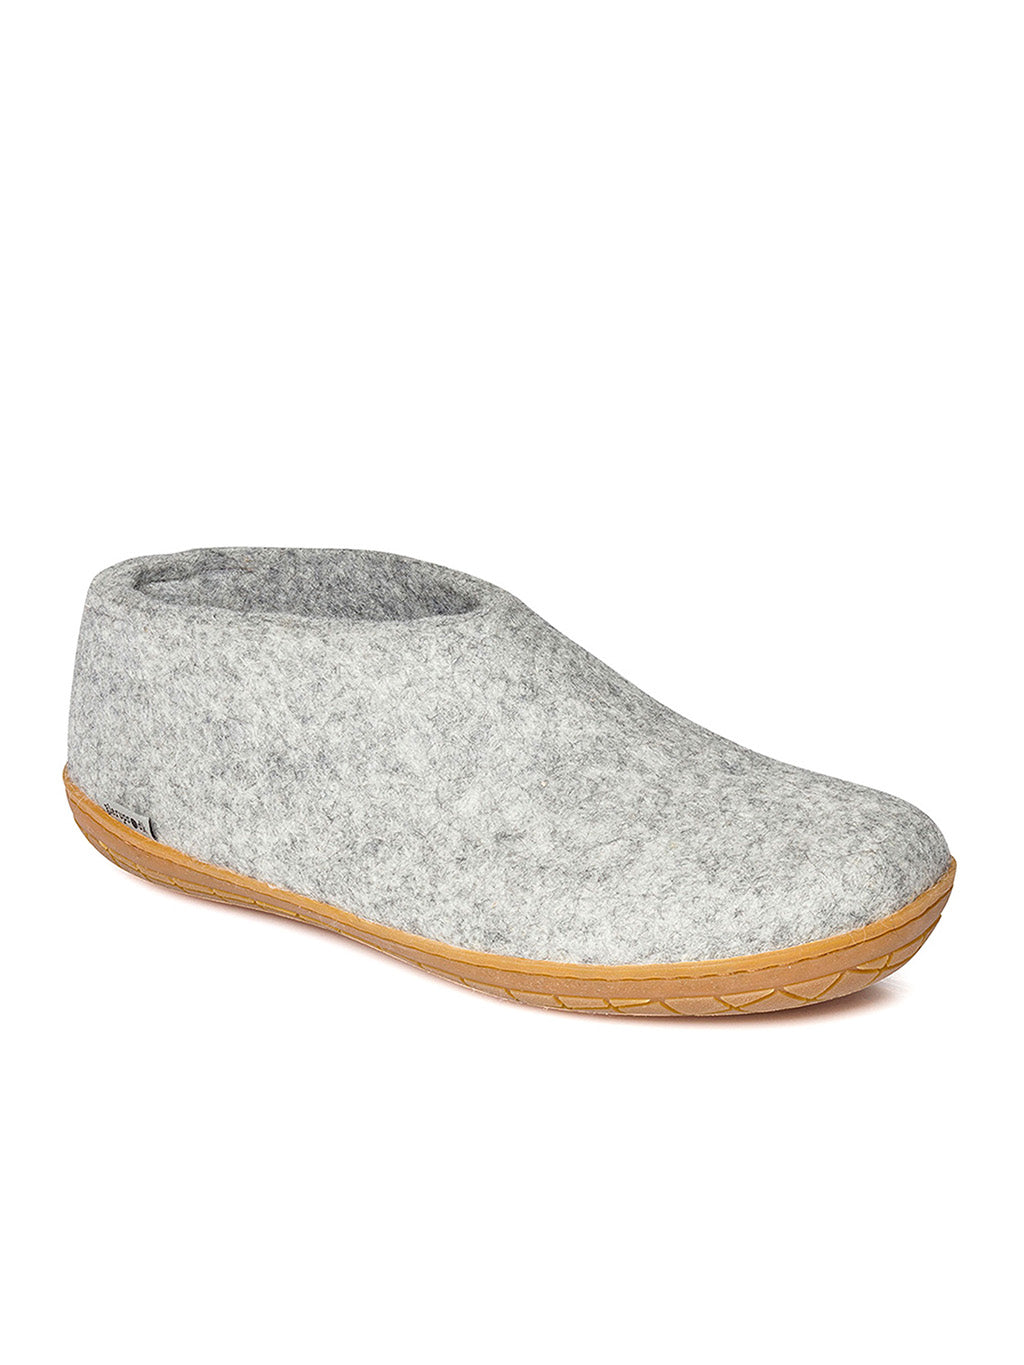 Chaussure de laine grise avec semelle en caoutchouc